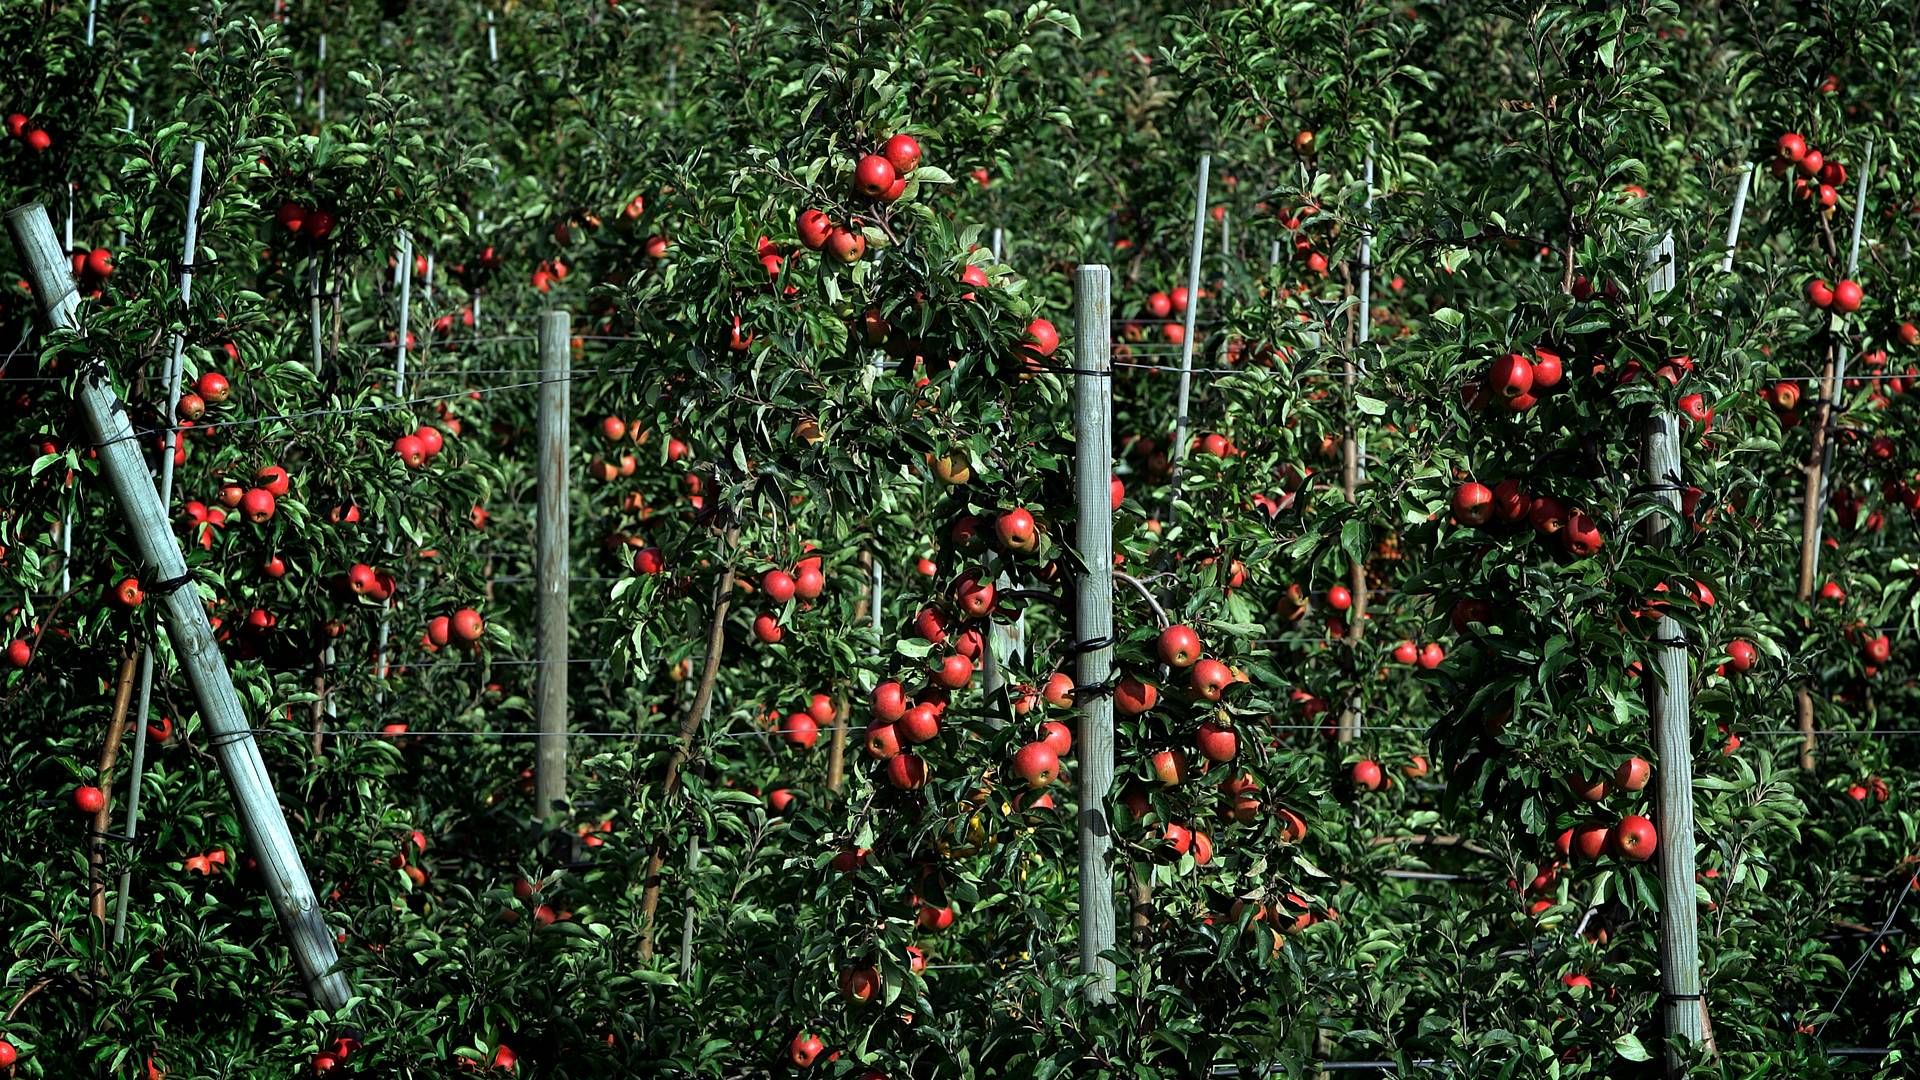 Der skal skrues op for den bulgarske produktion af frugt og grønt, lyder det fra landbrugsministeren. | Foto: Finn Frandsen/Politiken/Ritzau Scanpix